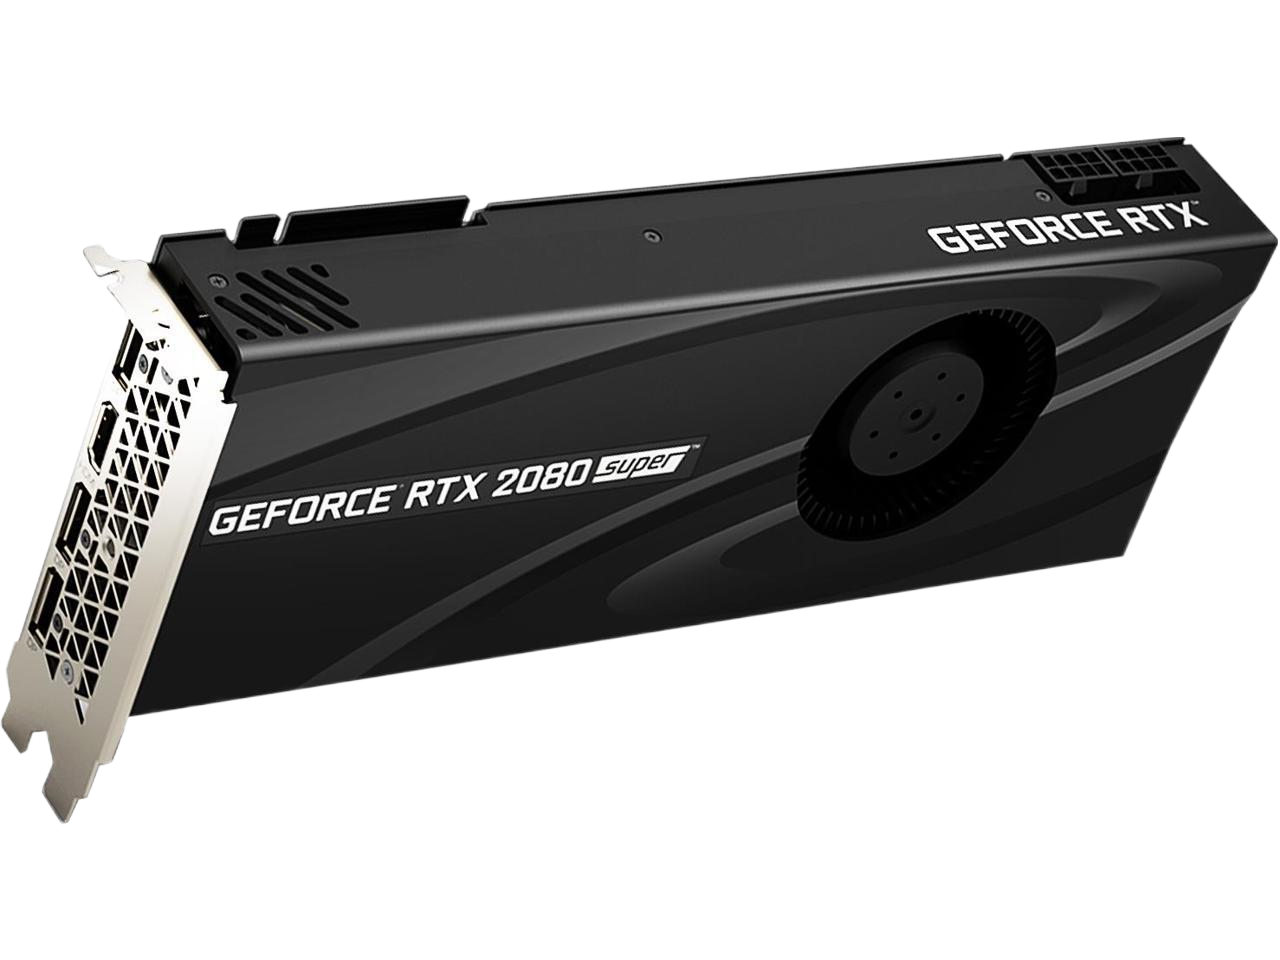 PNY GeForce RTX 2080 SUPER 8GB GDDR6 PCI Express 3.0 x16 SLI Support Video Graphics Card VCG20808SBLMPB